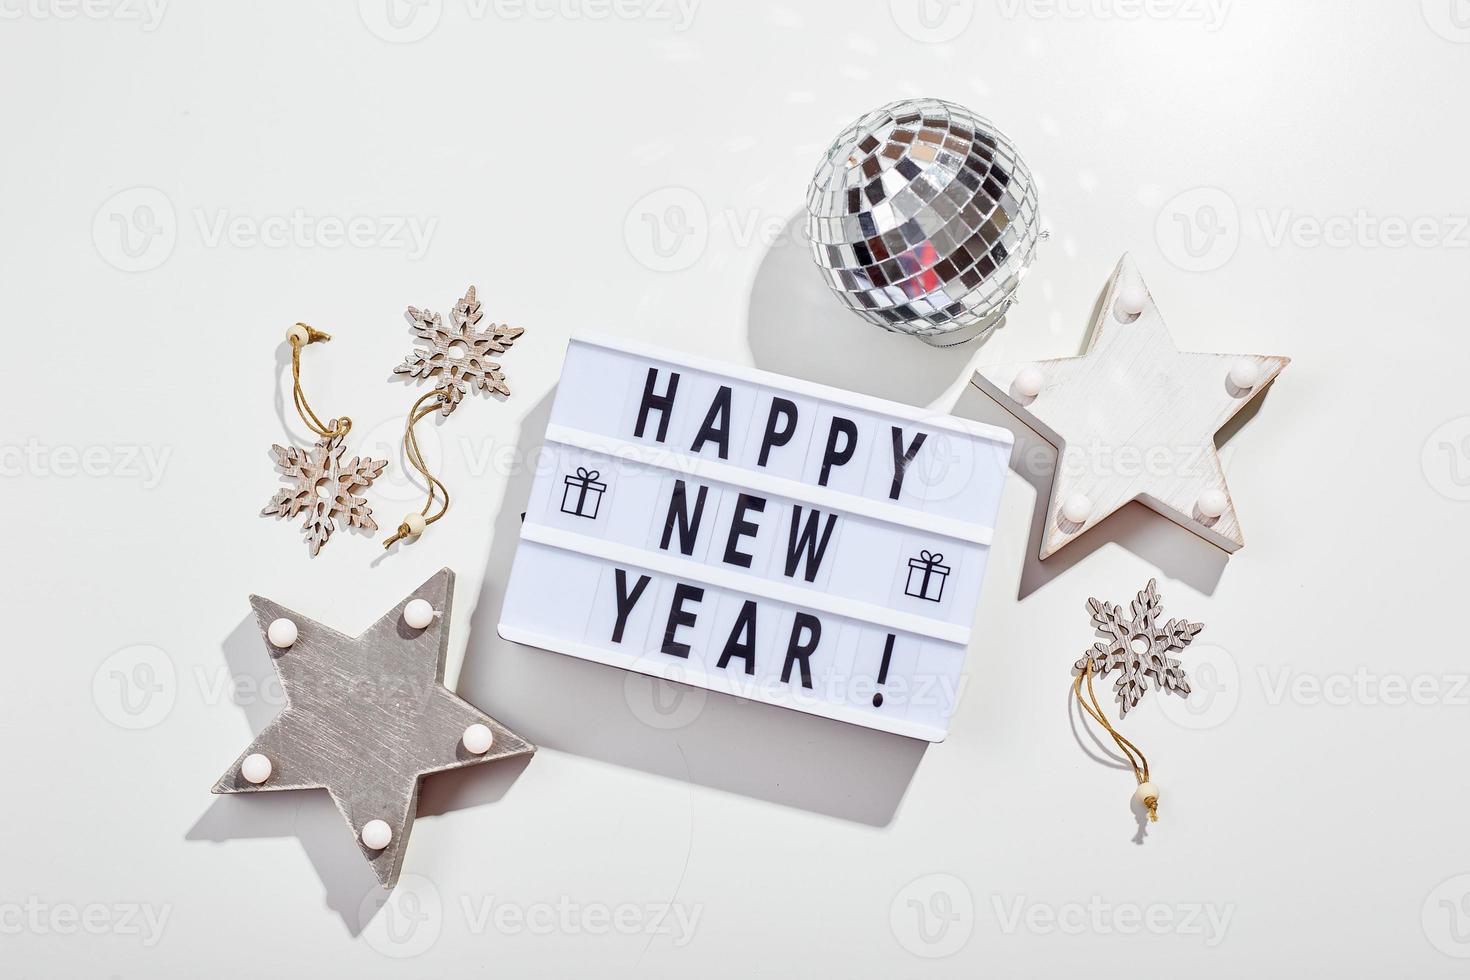 inscrição de caixa de luz feliz ano novo, bola de discoteca espelhada e decorações de estrelas de madeira foto